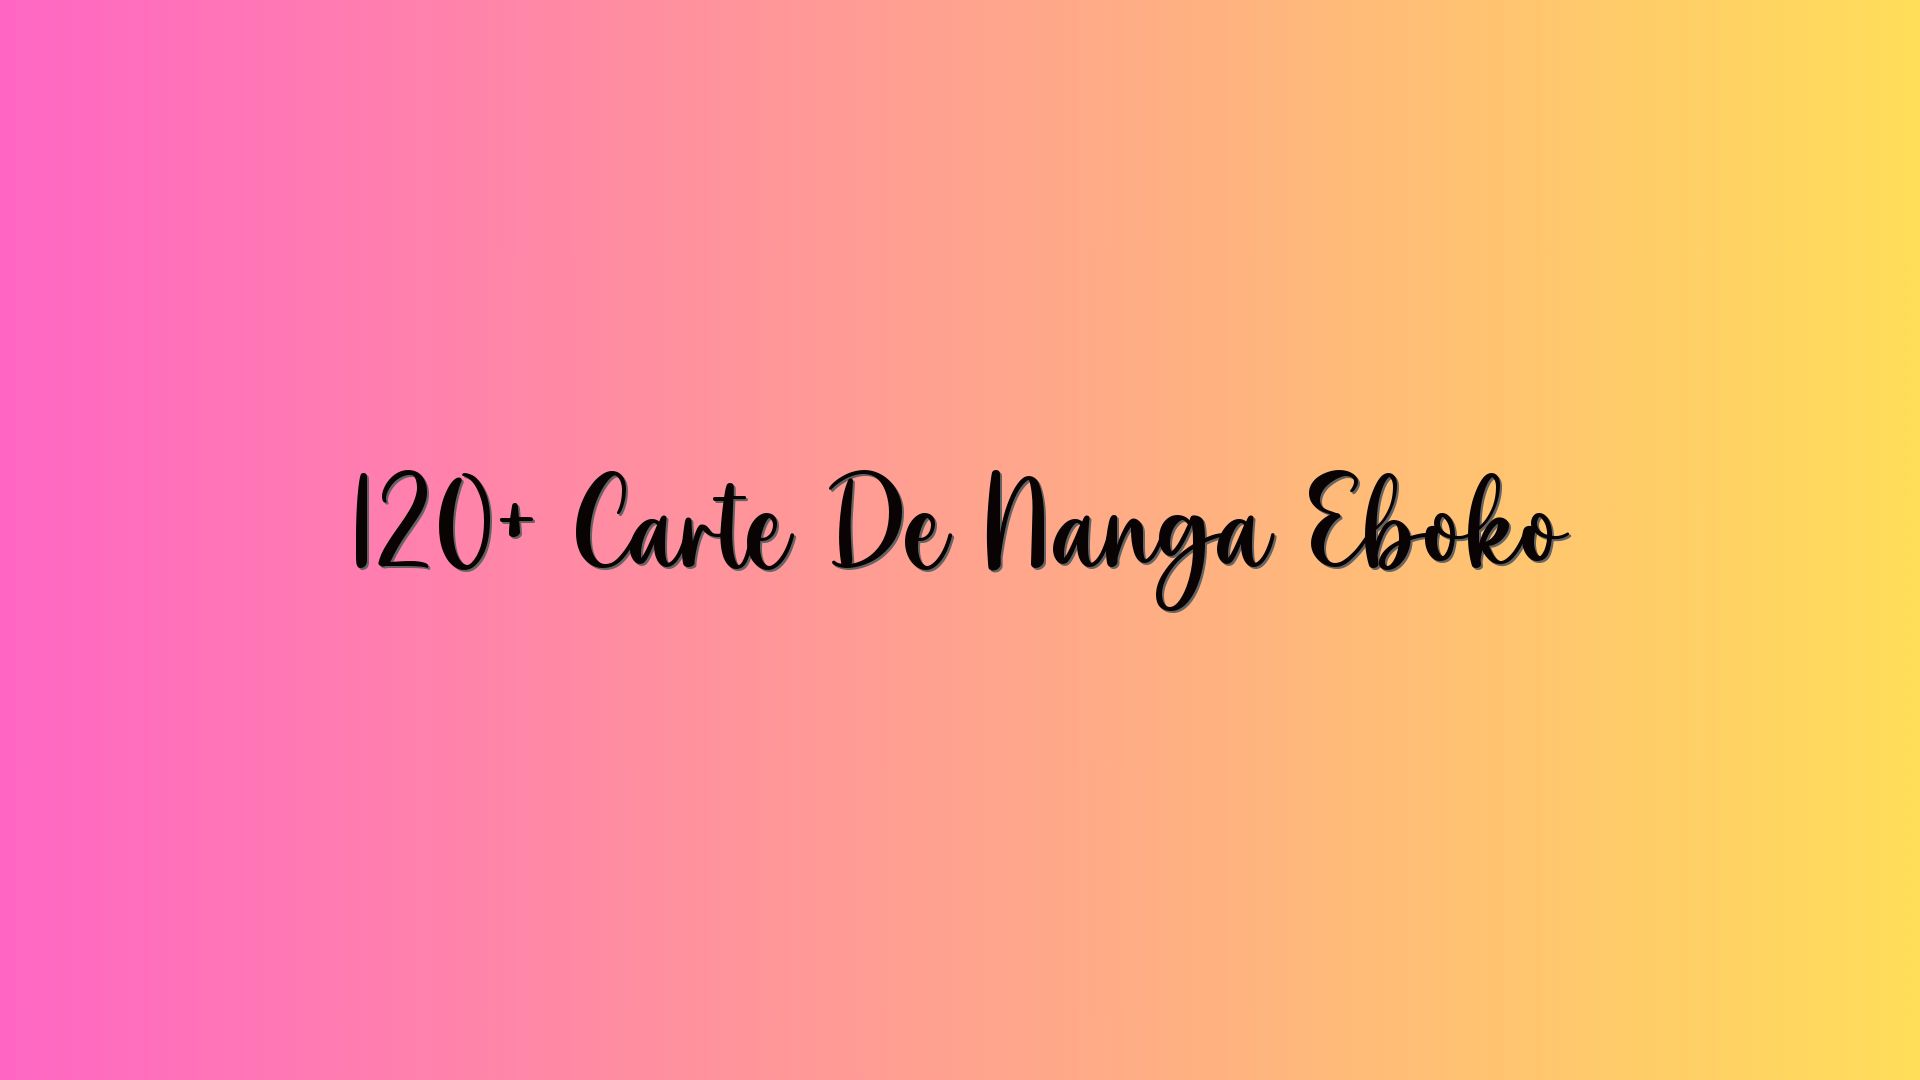 120+ Carte De Nanga Eboko